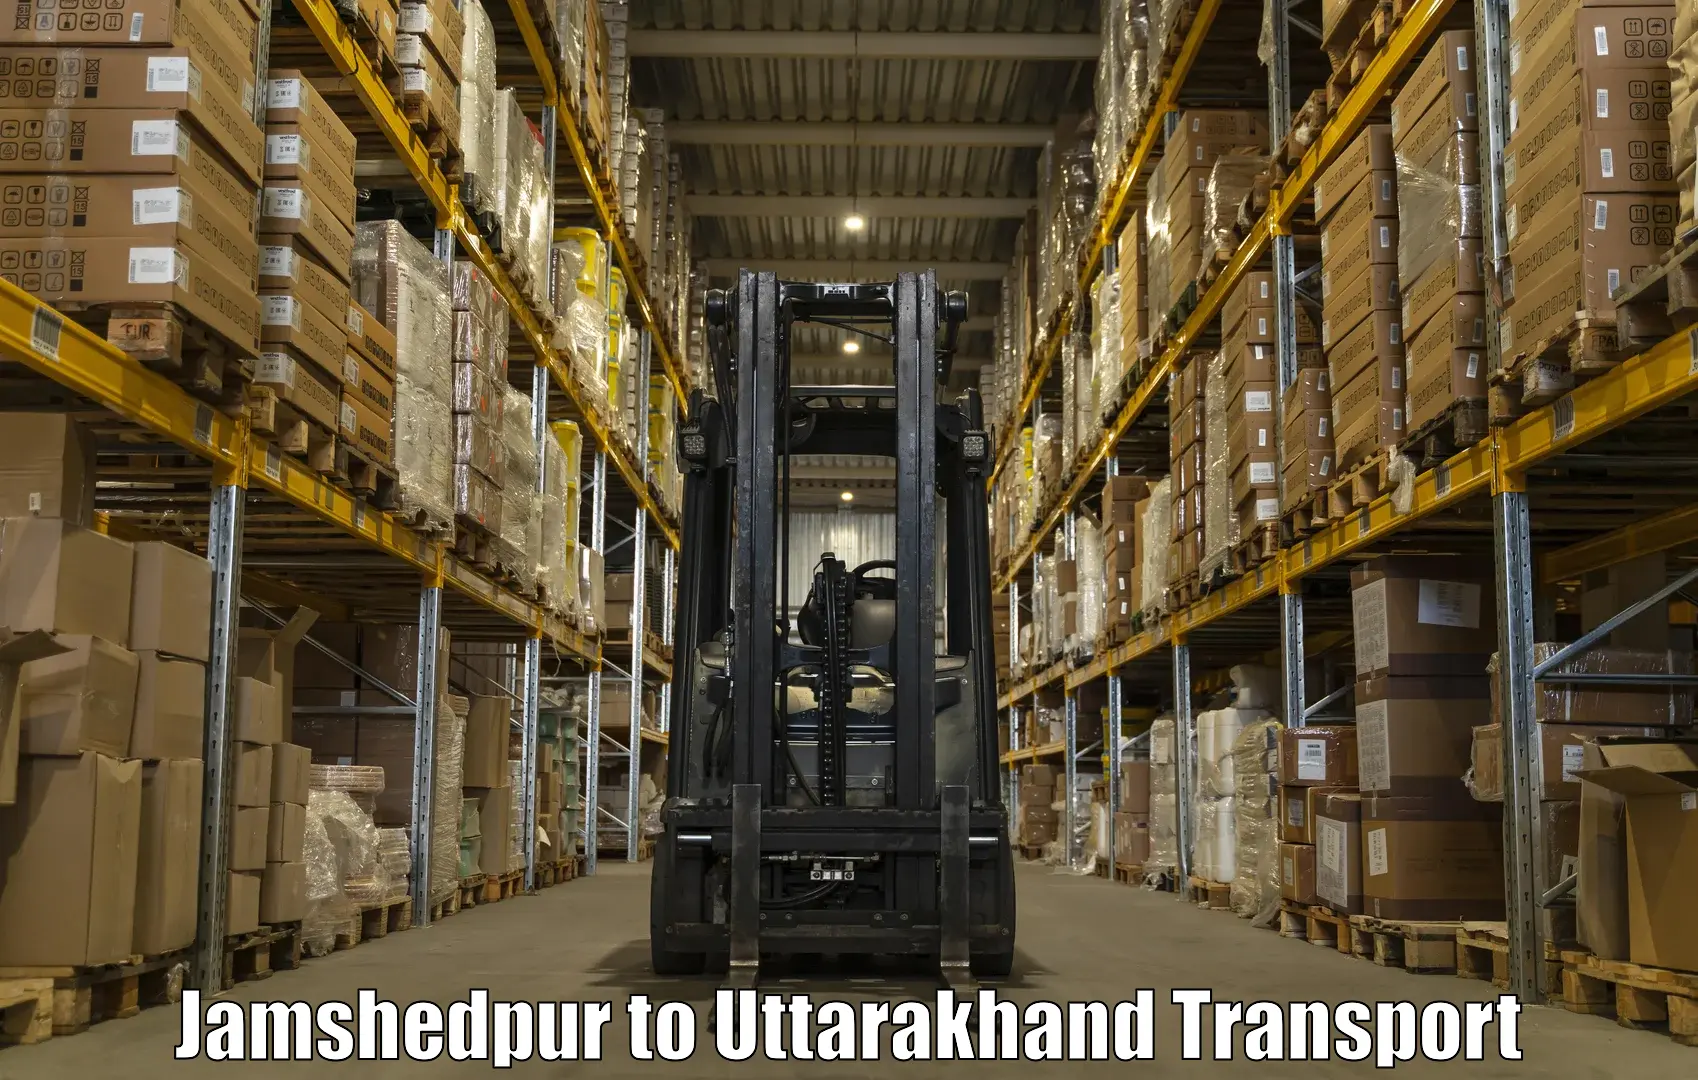 Online transport service Jamshedpur to Kashipur